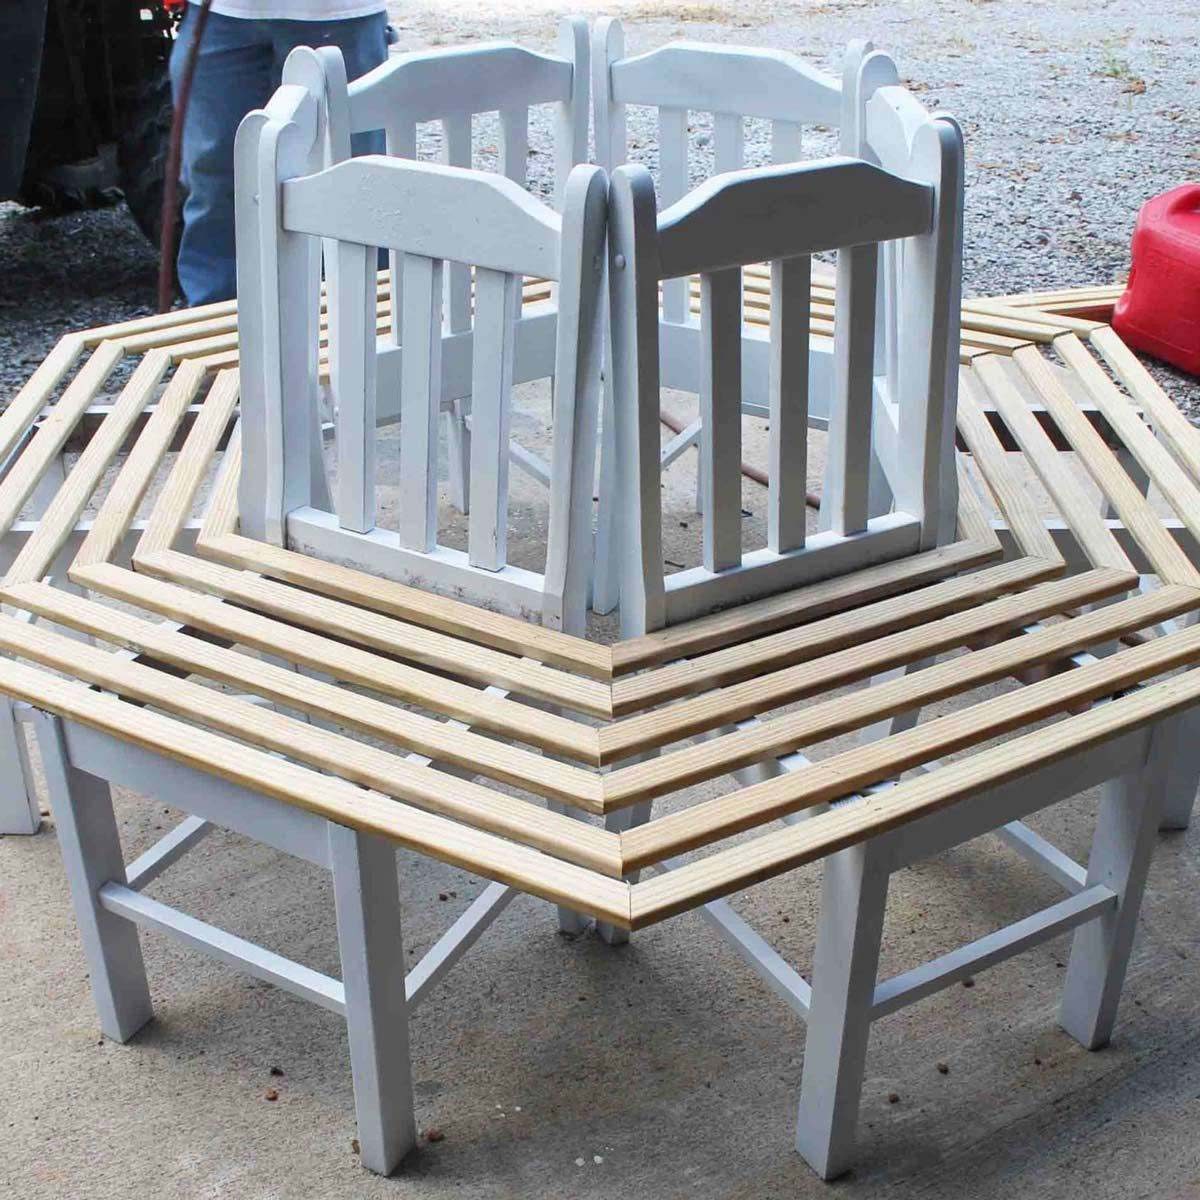 Hexagonal Chair Bench